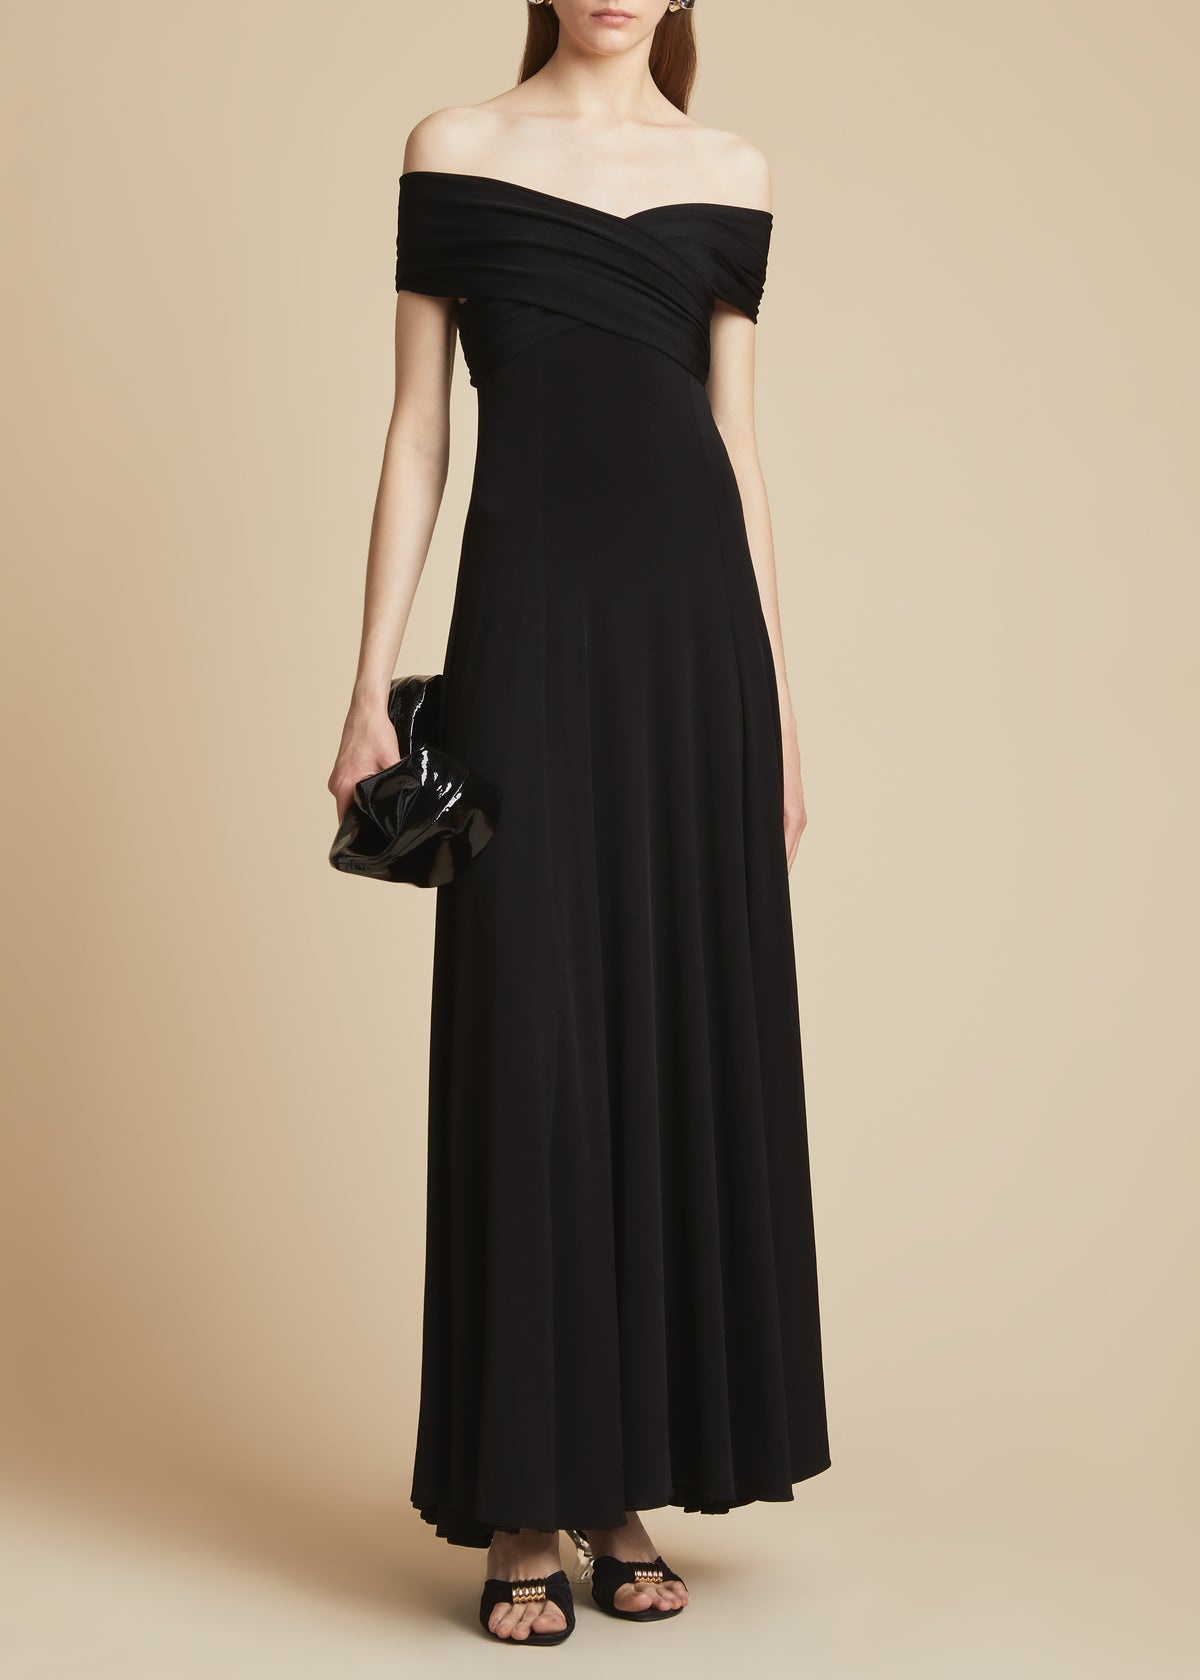 The Bruna Dress in Black - 1